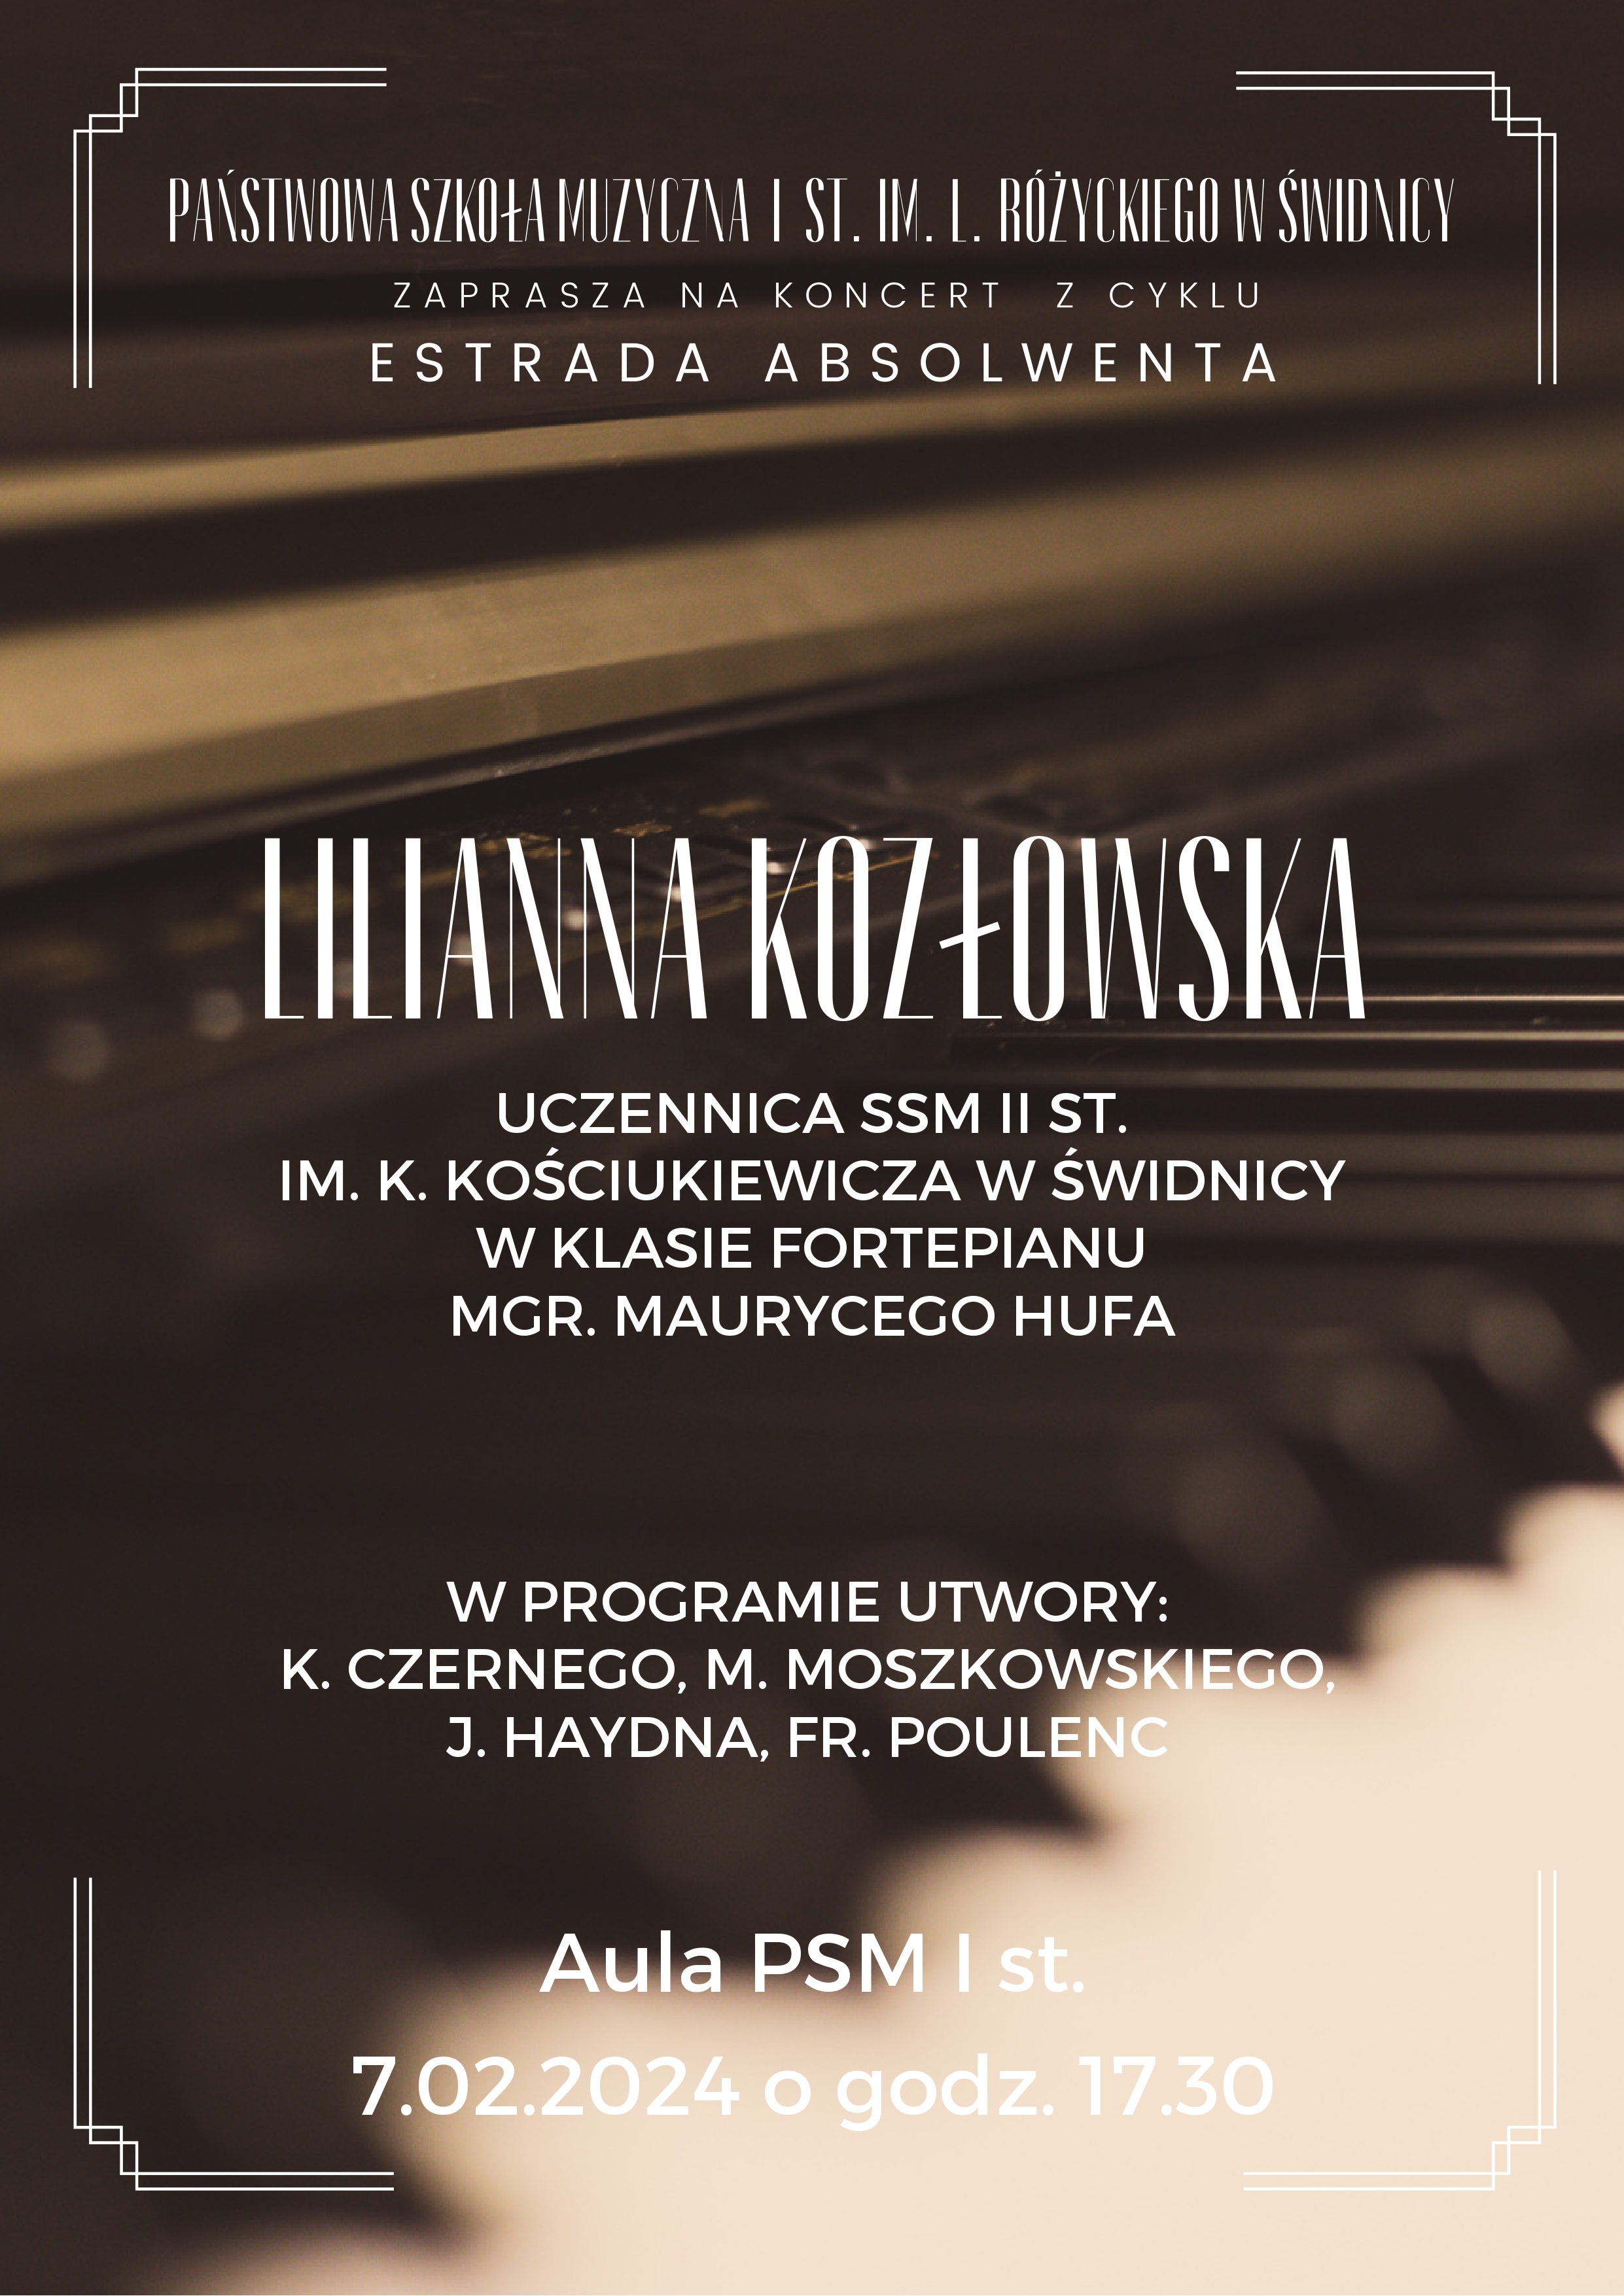 Plakat informujący o koncercie absolwentki PSM I st. Na tle nieostrego zjdęcia fortepianu białe napisy informujące o koncercie.